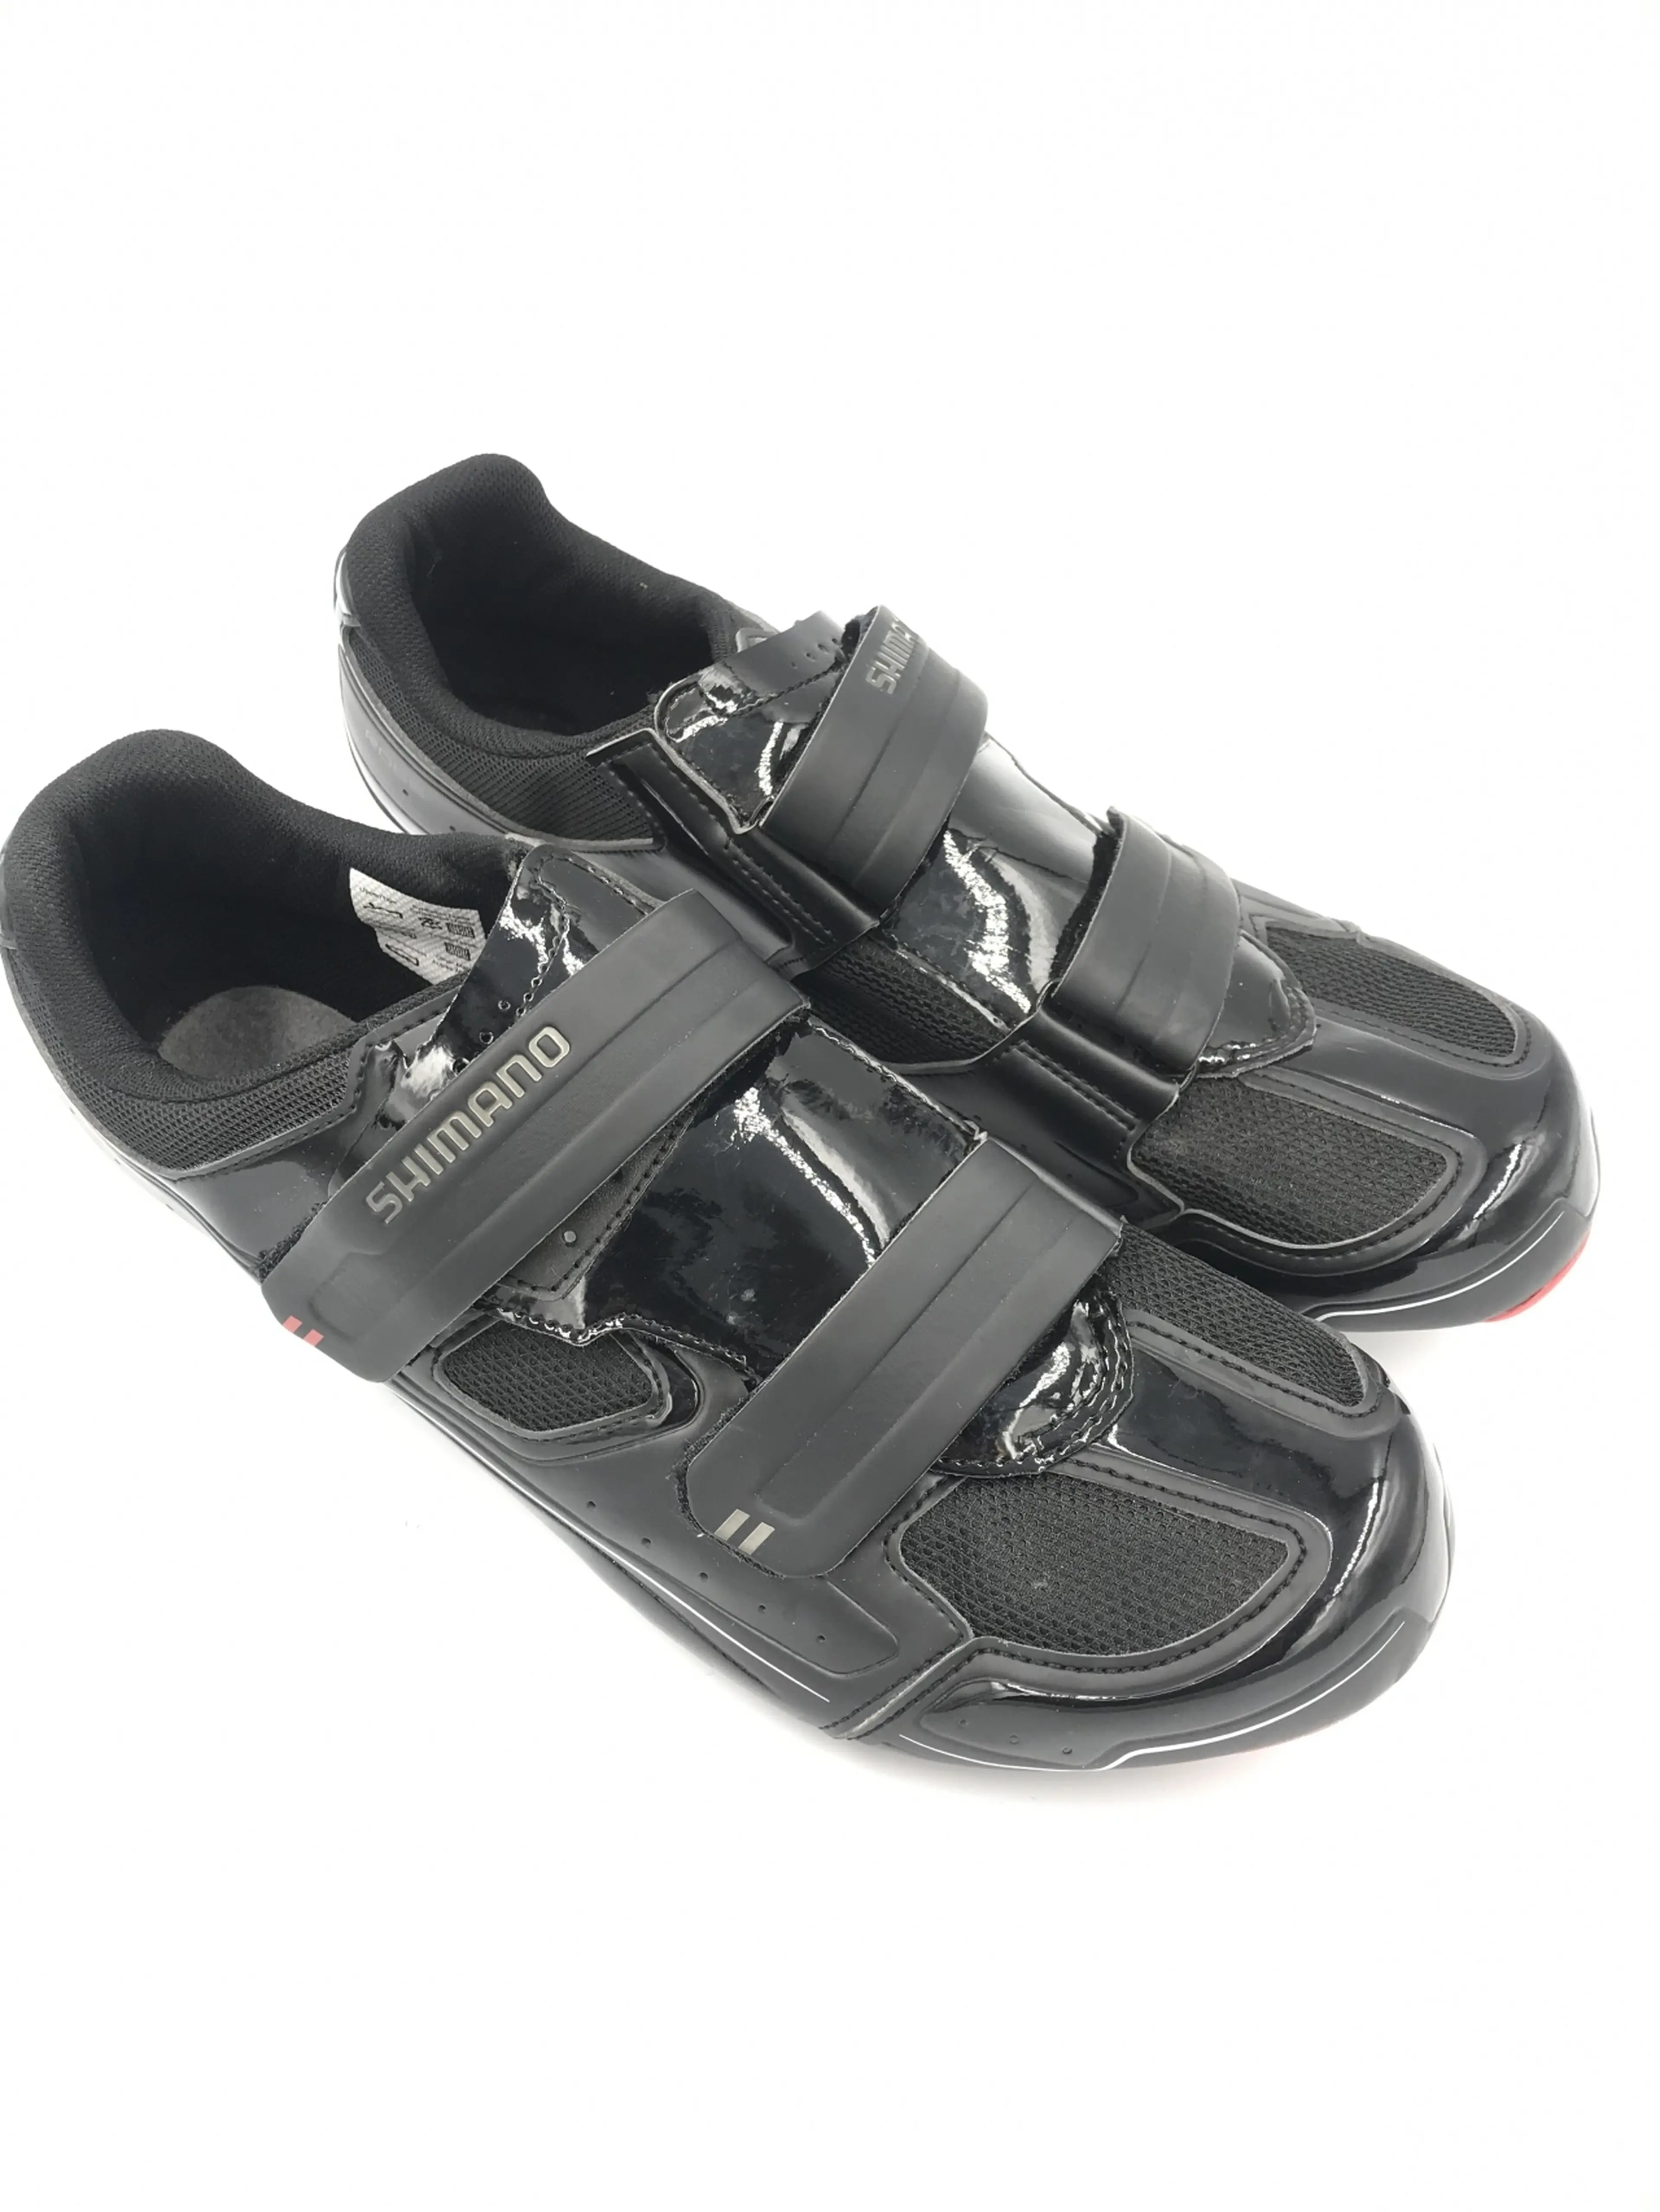 2. Pantofi Shimano SH-R065L nr 48, 30.5 cm